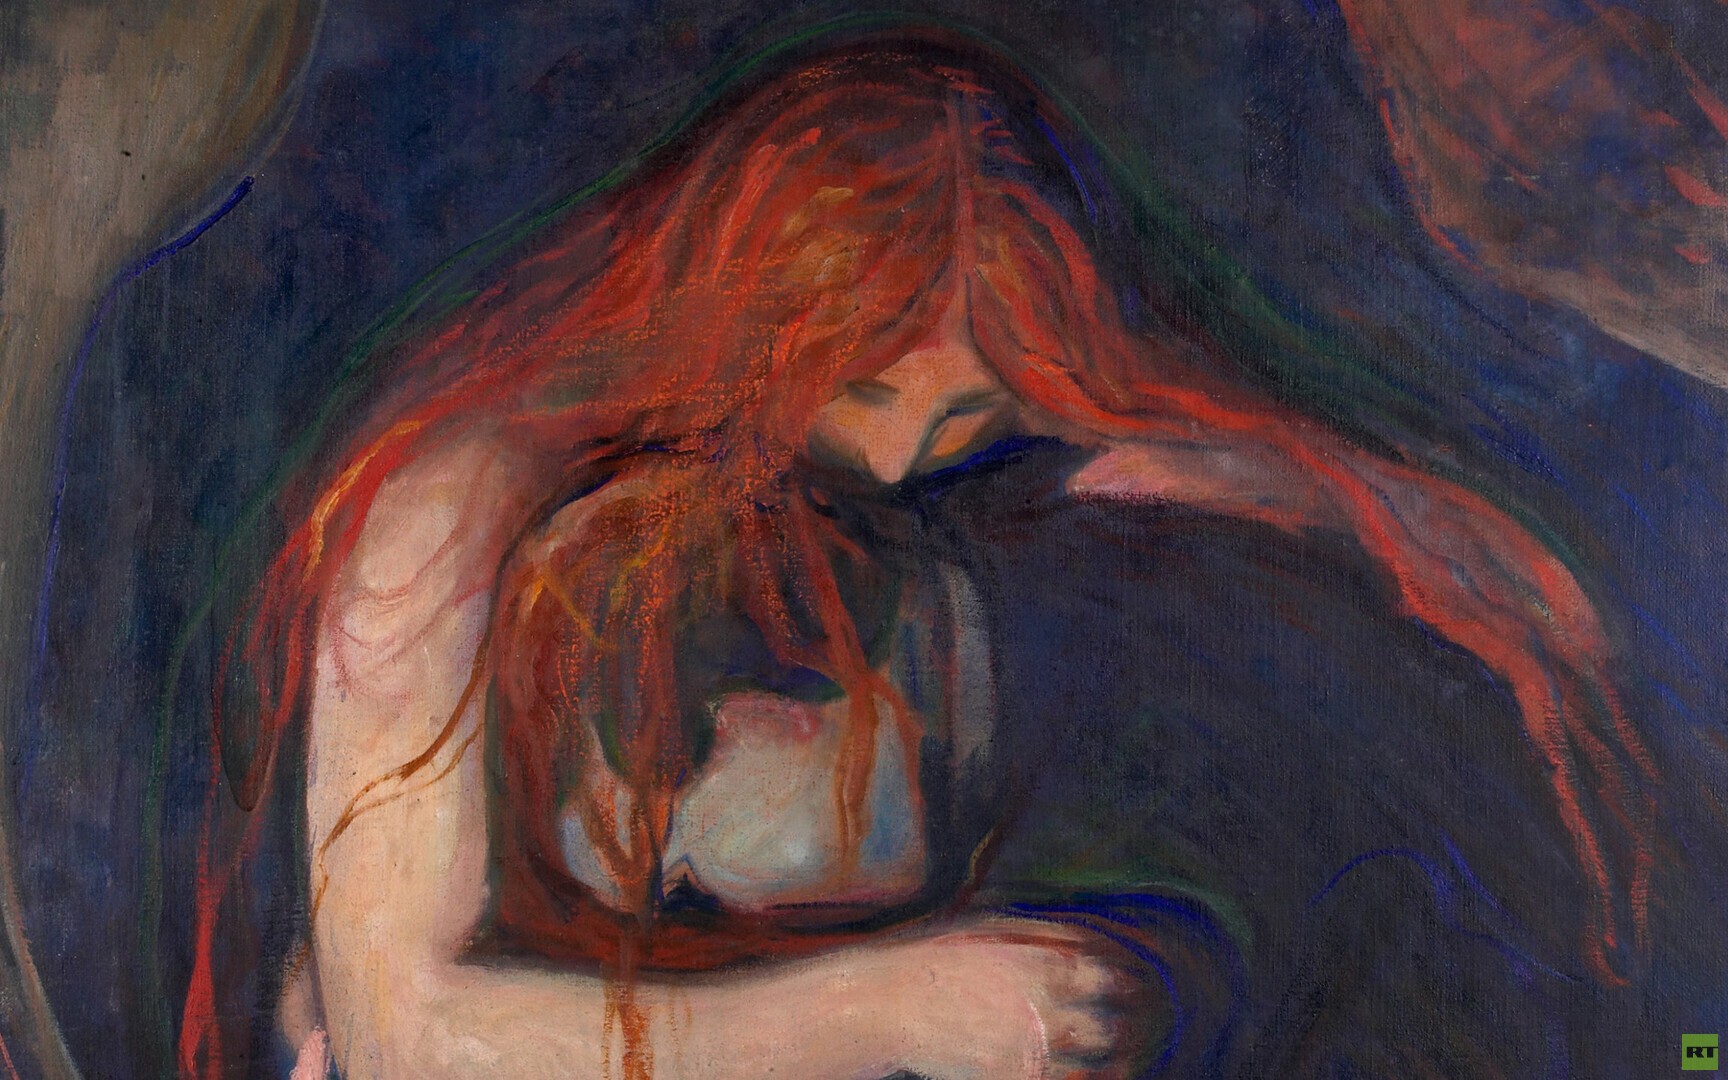 لوحة حب وألم للرسام النرويجي إدوارد مونك (إنترنت)